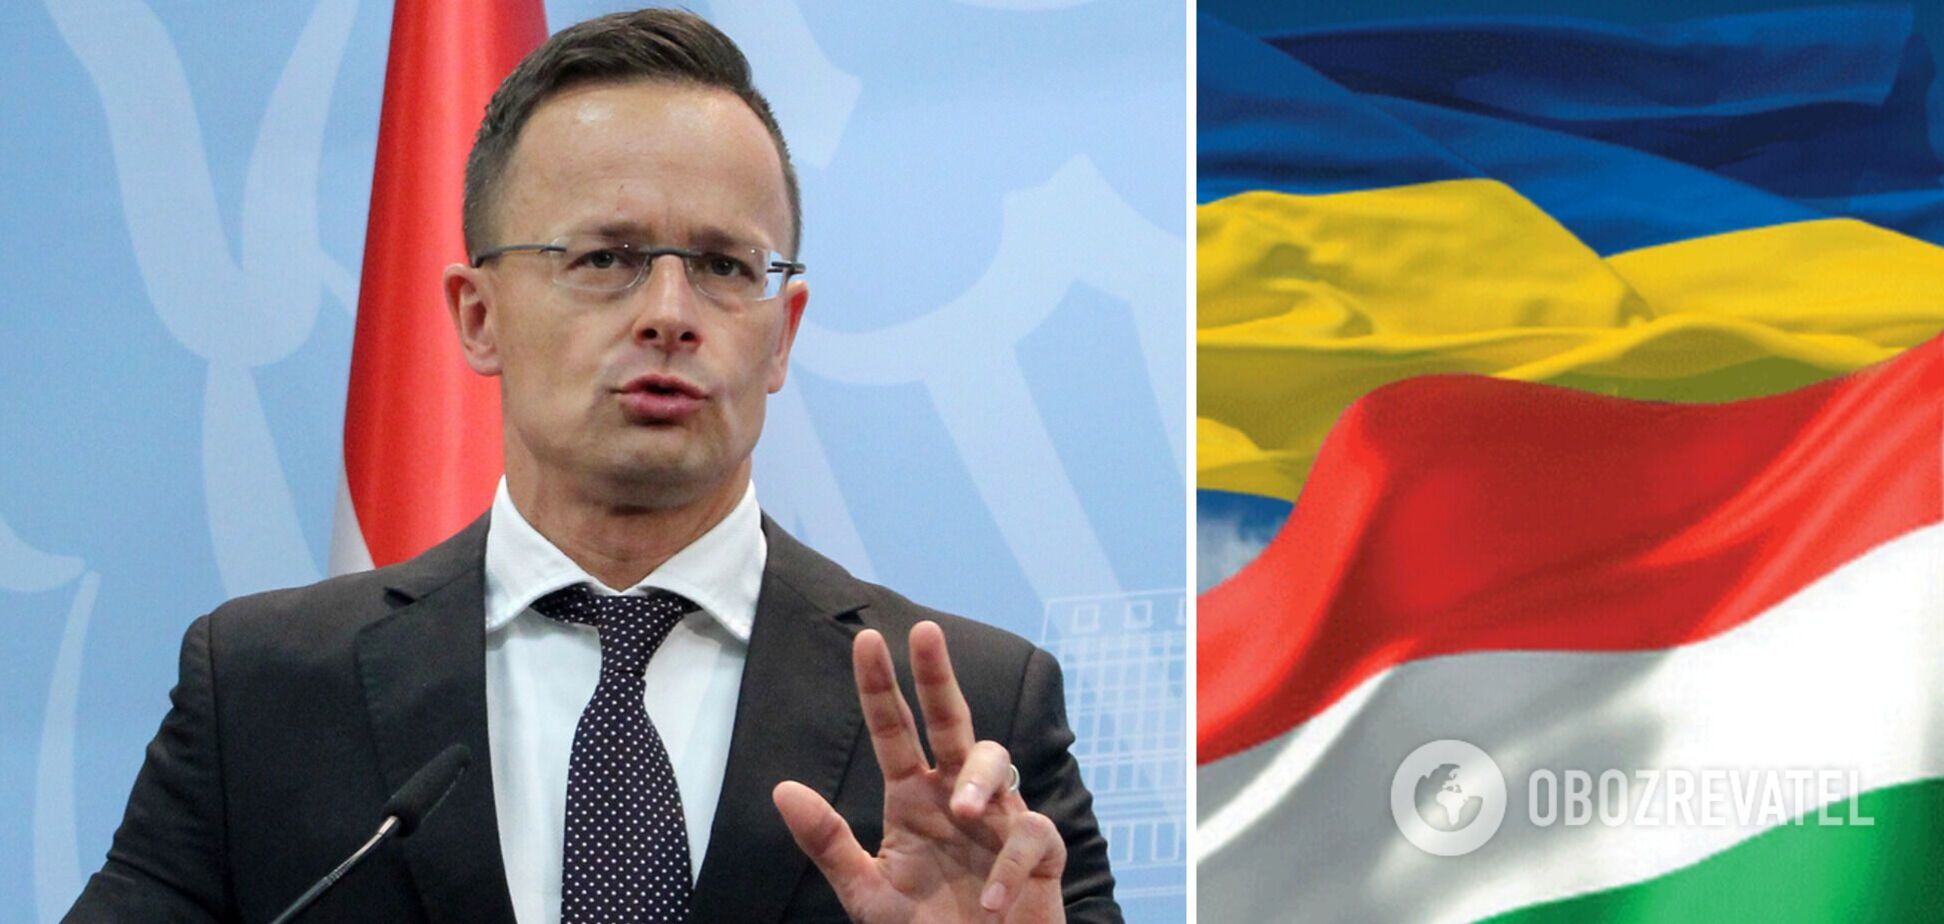 Сийярто вызвал посла Украины из-за критических заявлений насчет позиции Будапешта относительно войны